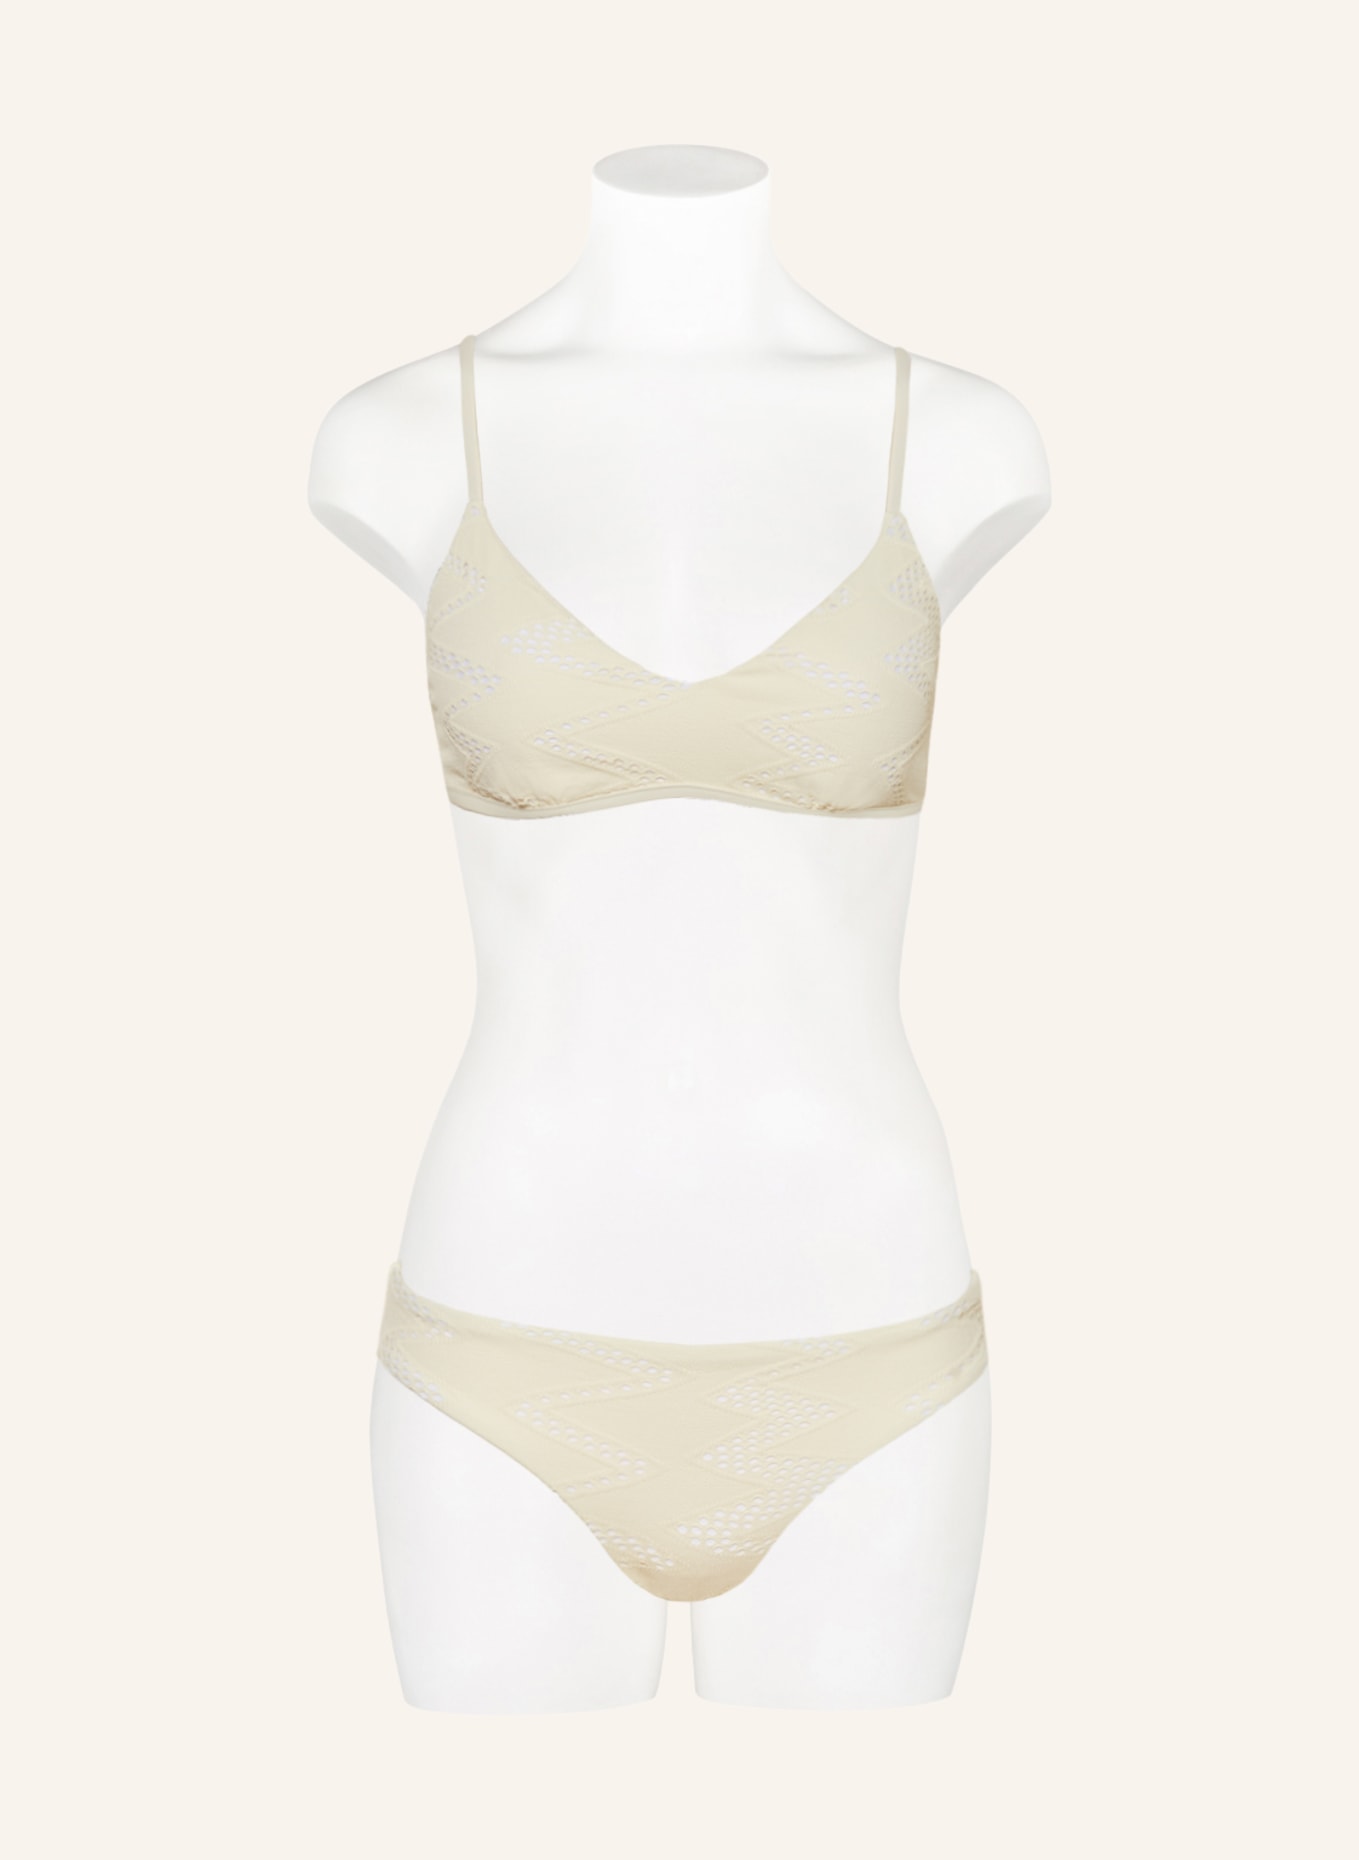 SEAFOLLY Panty bikini bottoms CHIARA, Color: ECRU (Image 2)